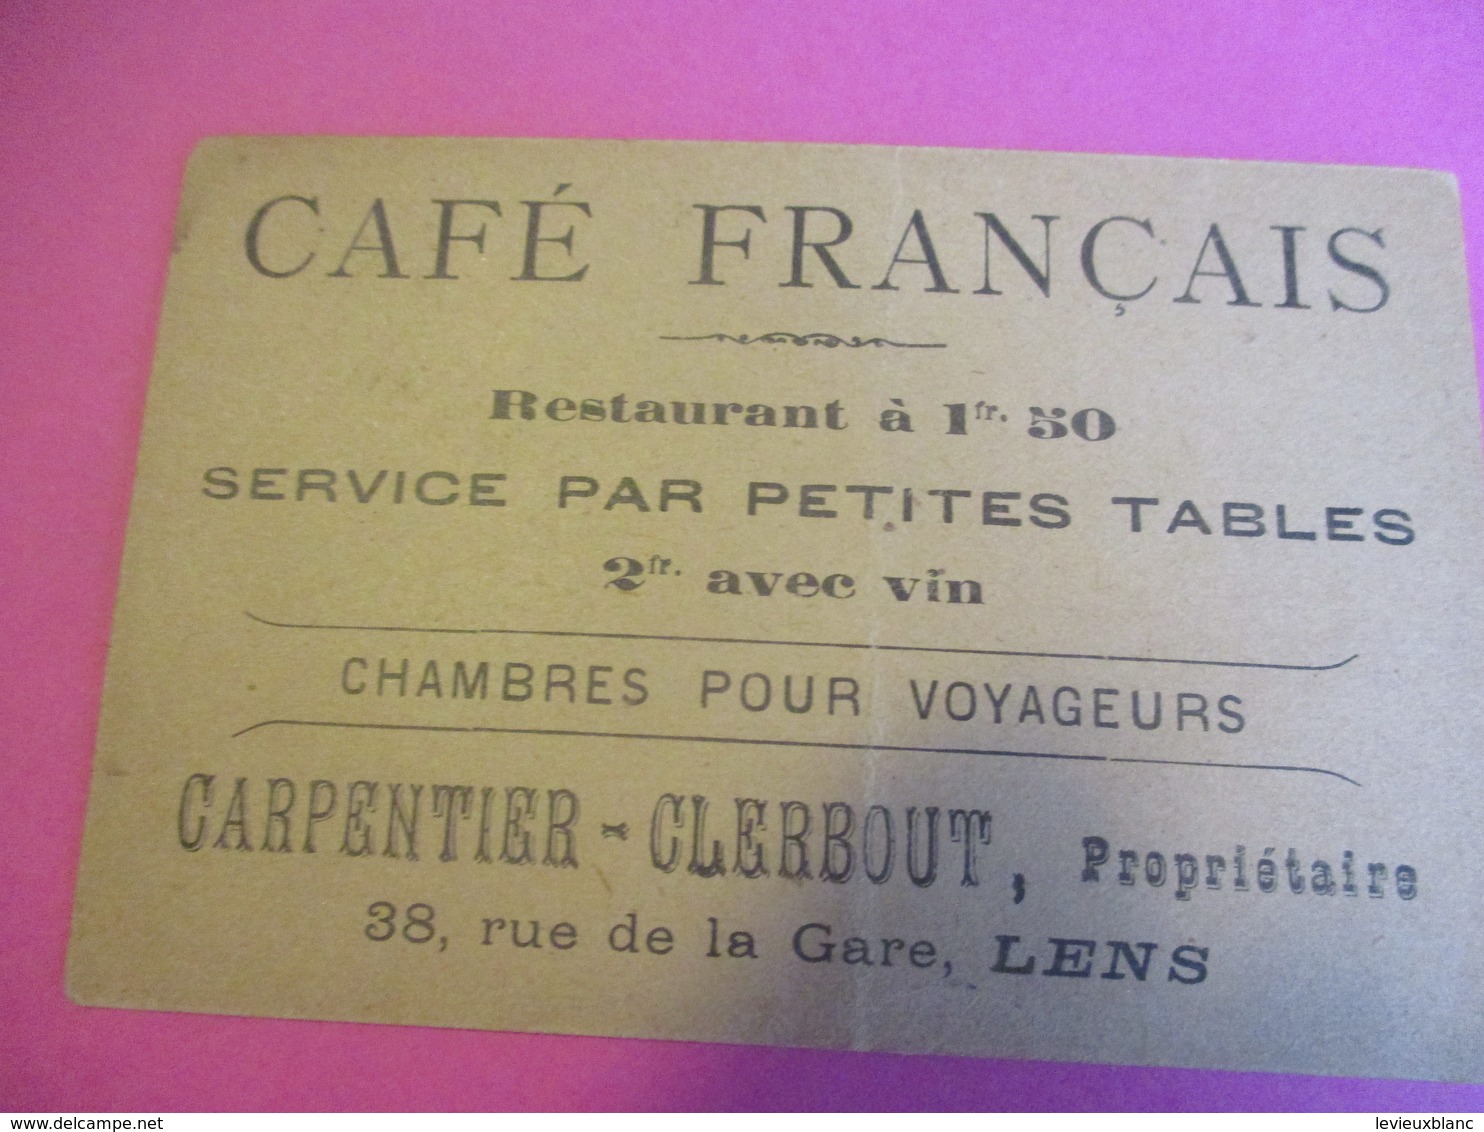 Image Commerciale à Devinette/Café Français/Chambre Pour Voyageurs/Carpentier-Clerbout/ LENS /Vers 1900-1910 CAC159 - Sports & Tourisme